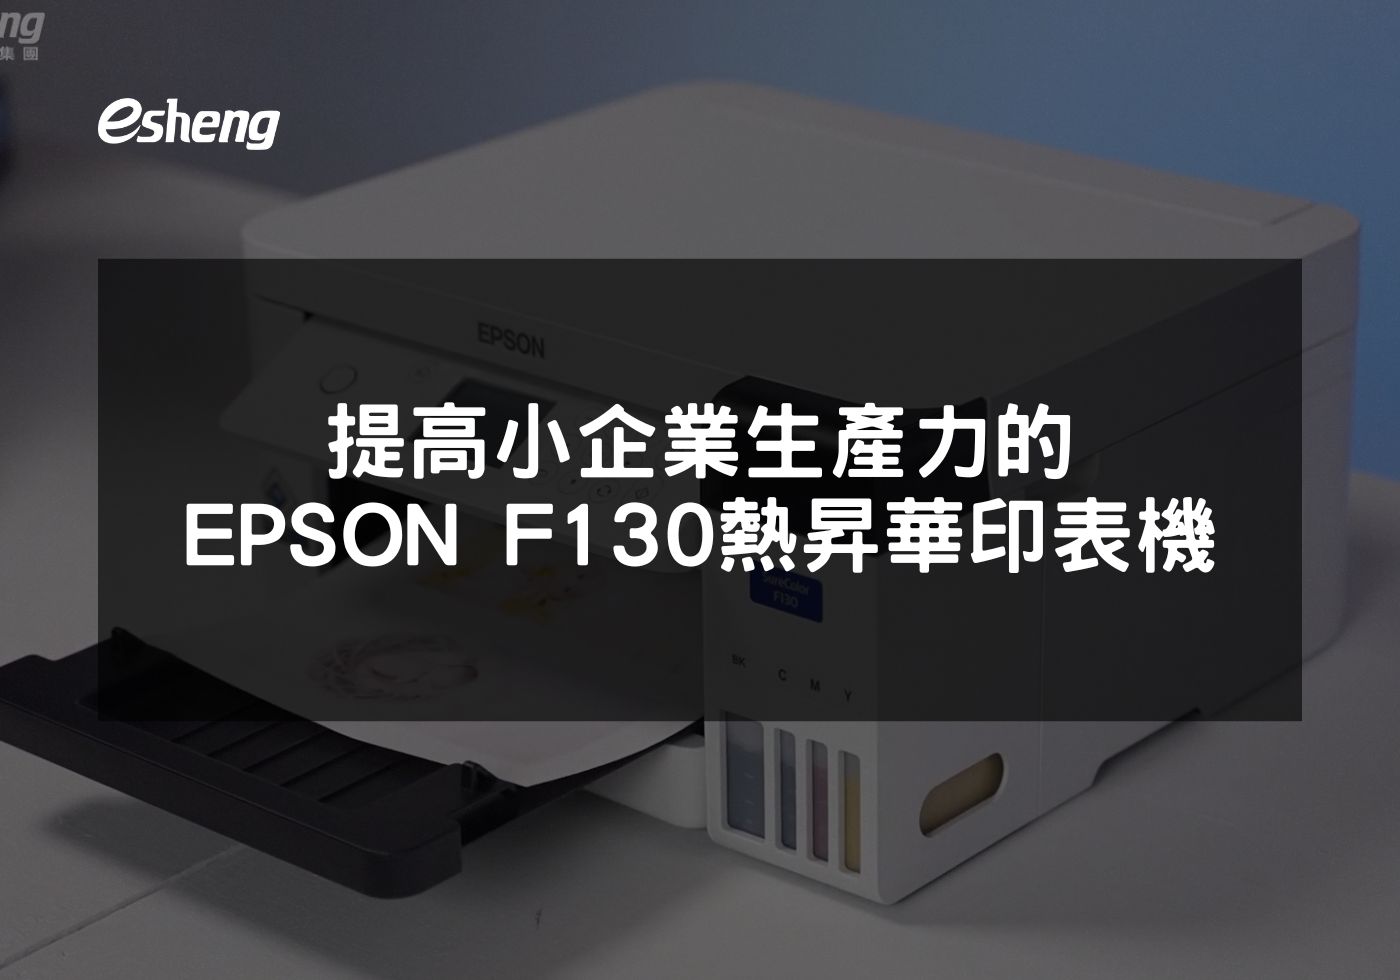 EPSON F130 熱昇華印表機如何革新創意產業的印製工藝